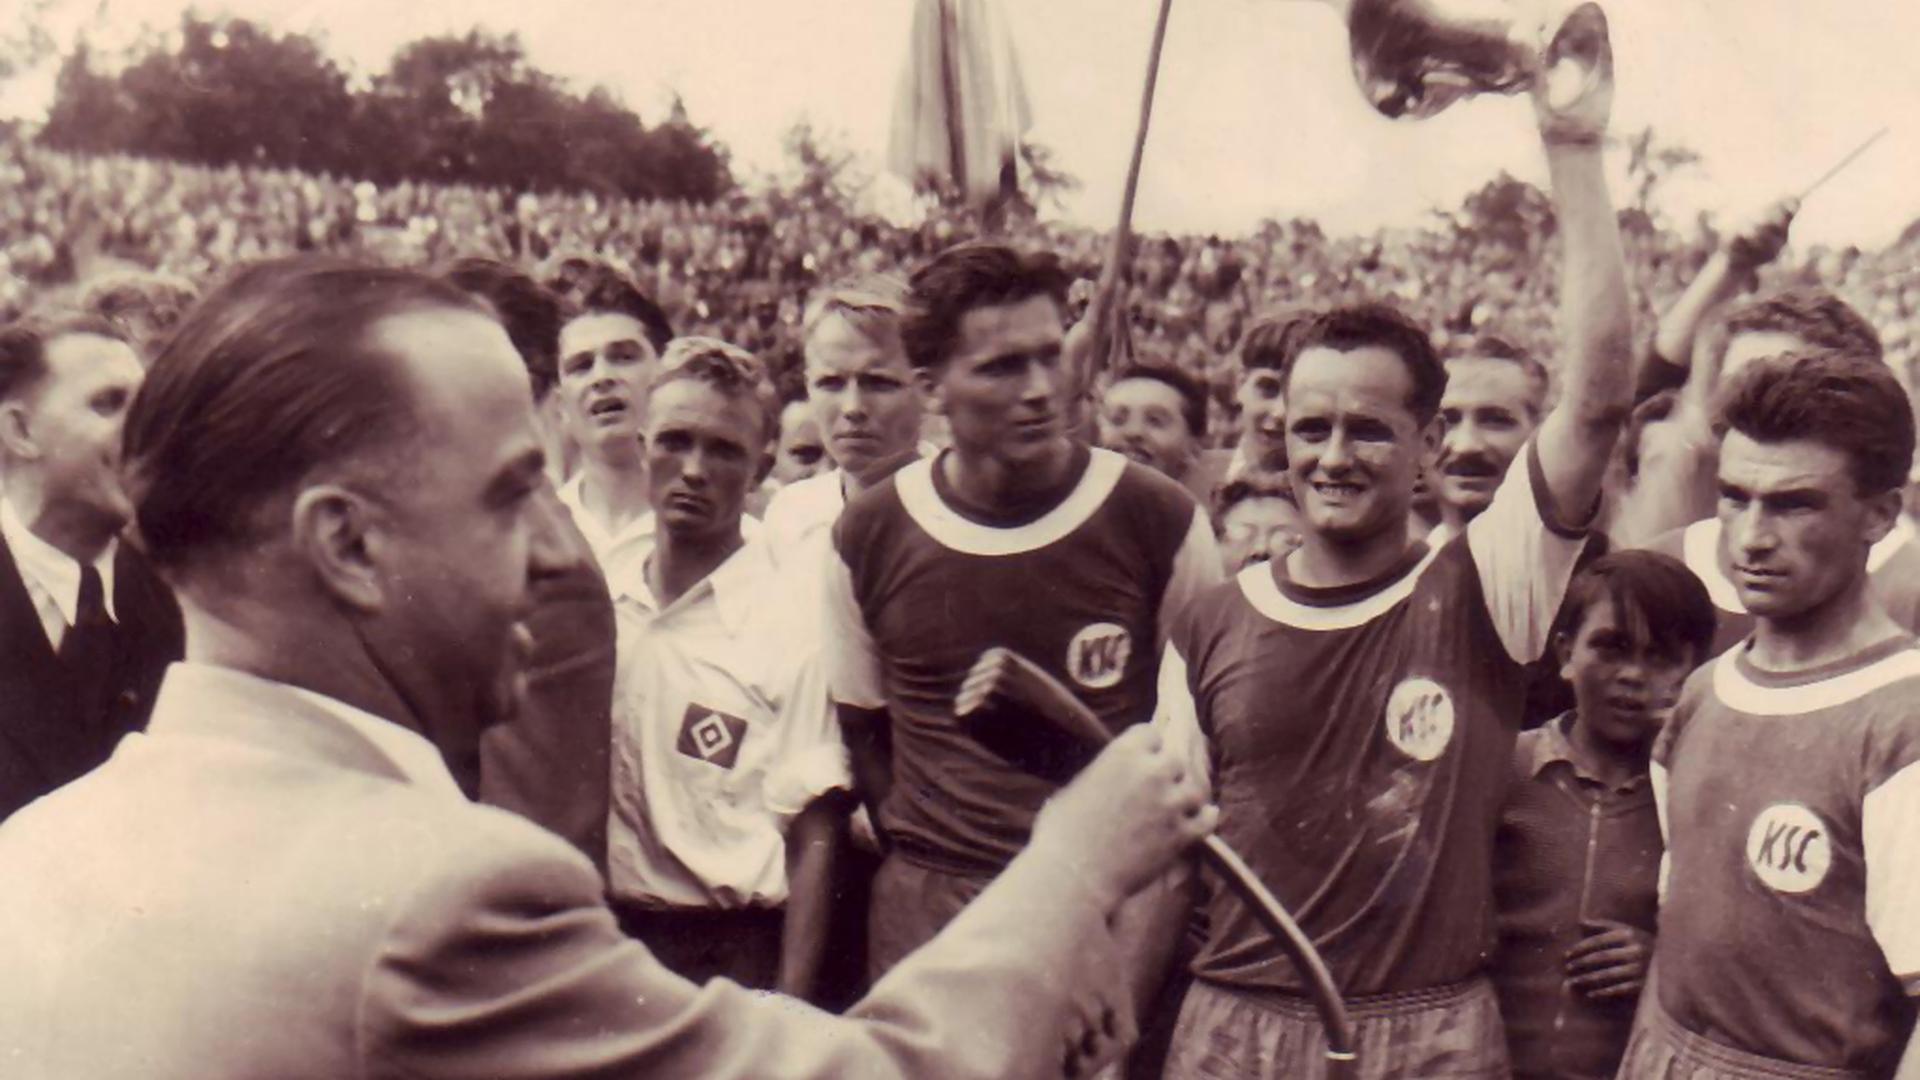 Stolzer Moment III: Heinz Ruppenstein, Walter Baureis und Ossi Traub (von links) nach dem Pokaltriumph über den HSV im Wildparkstadion bei der Siegerehrung mit DFB-Präsident Peco Bauwens. 